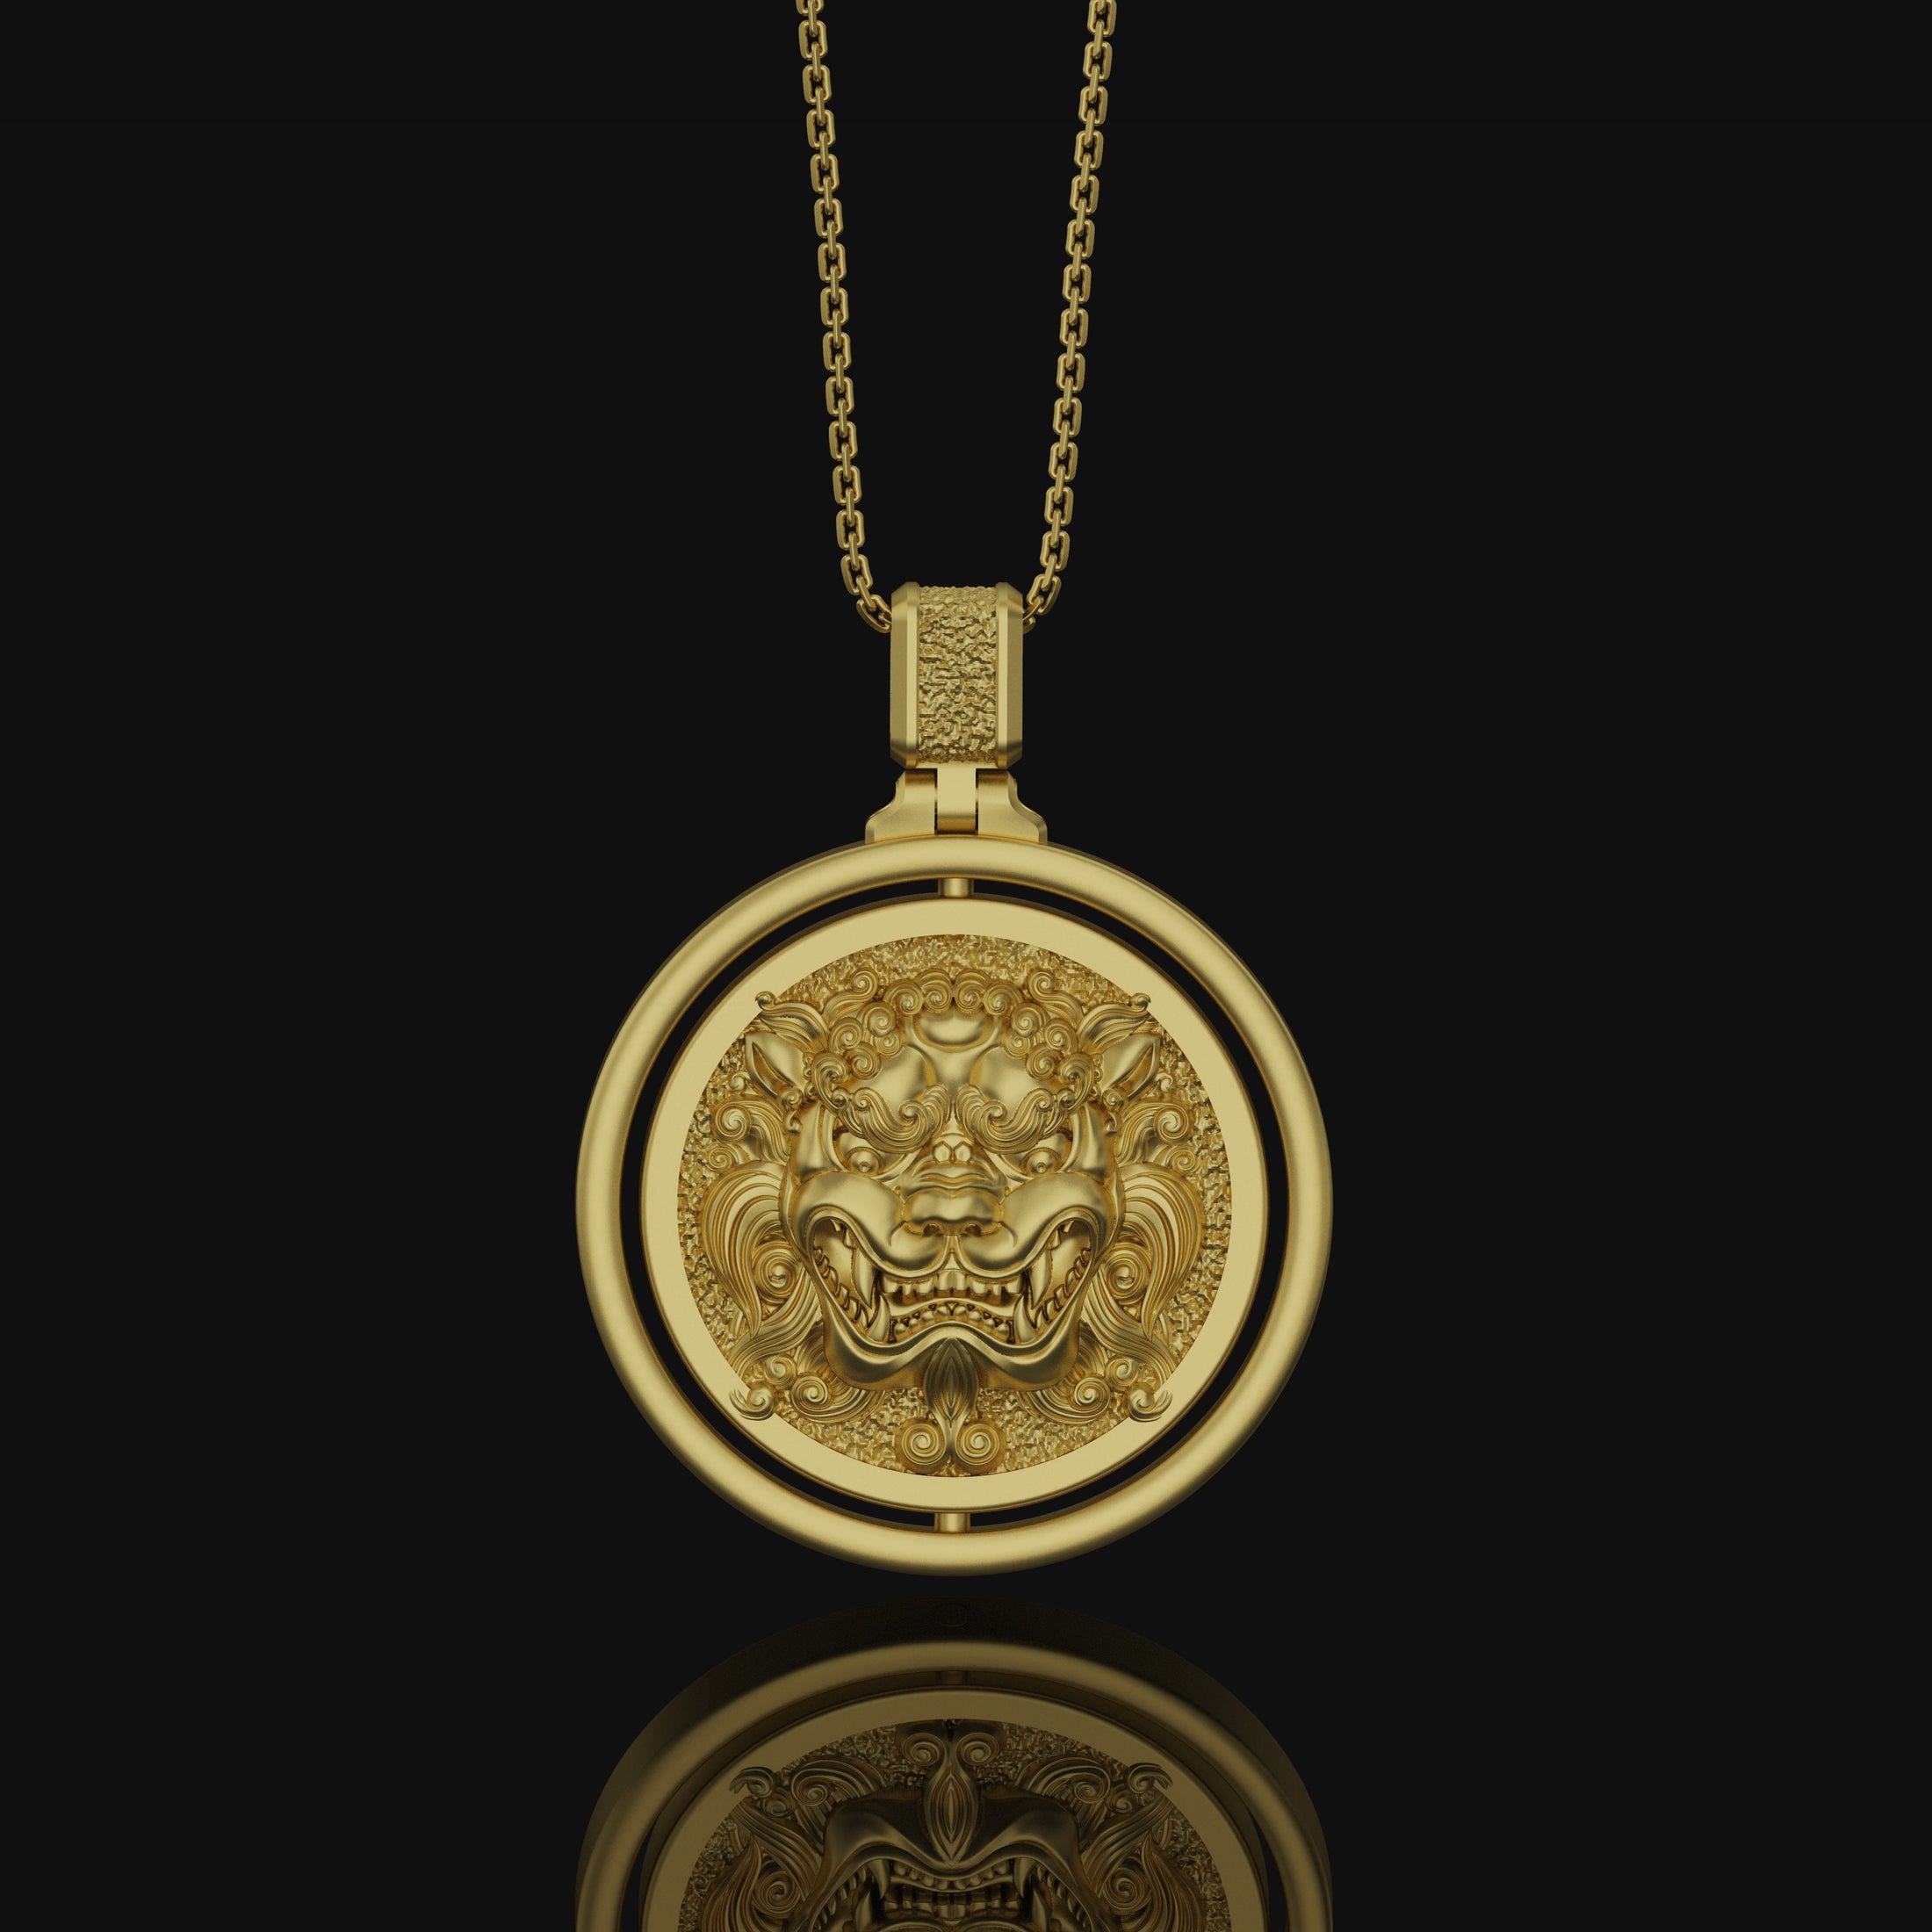 Foo Dog Necklace, Guardian Lion, Asian Myth, Chinese Mythology, Medallion Jewelry, Rotating Pendant, Personalized Gift